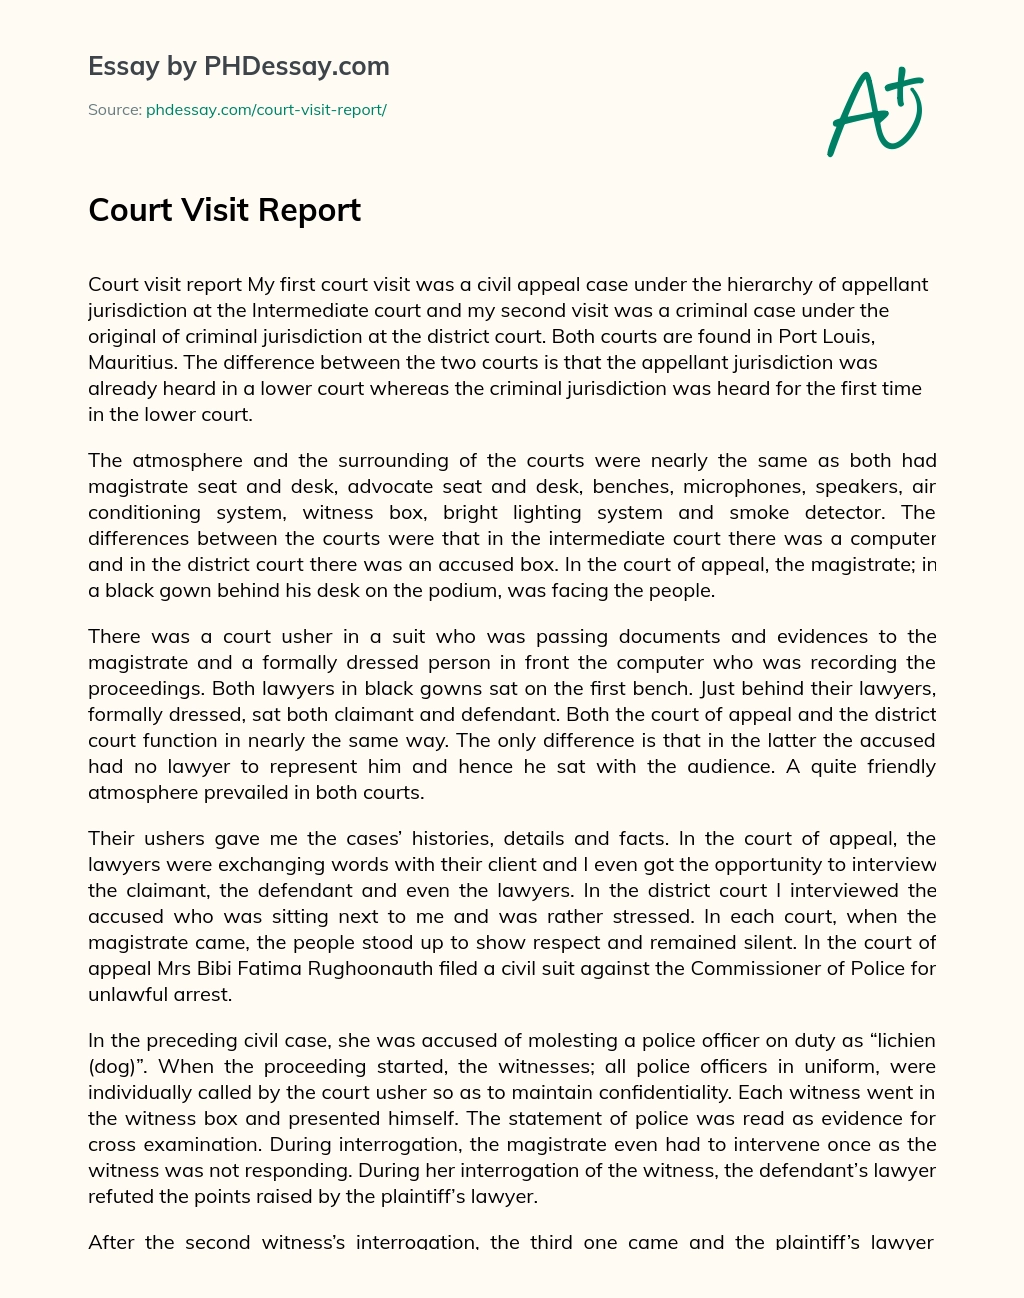 Court Visit Report essay